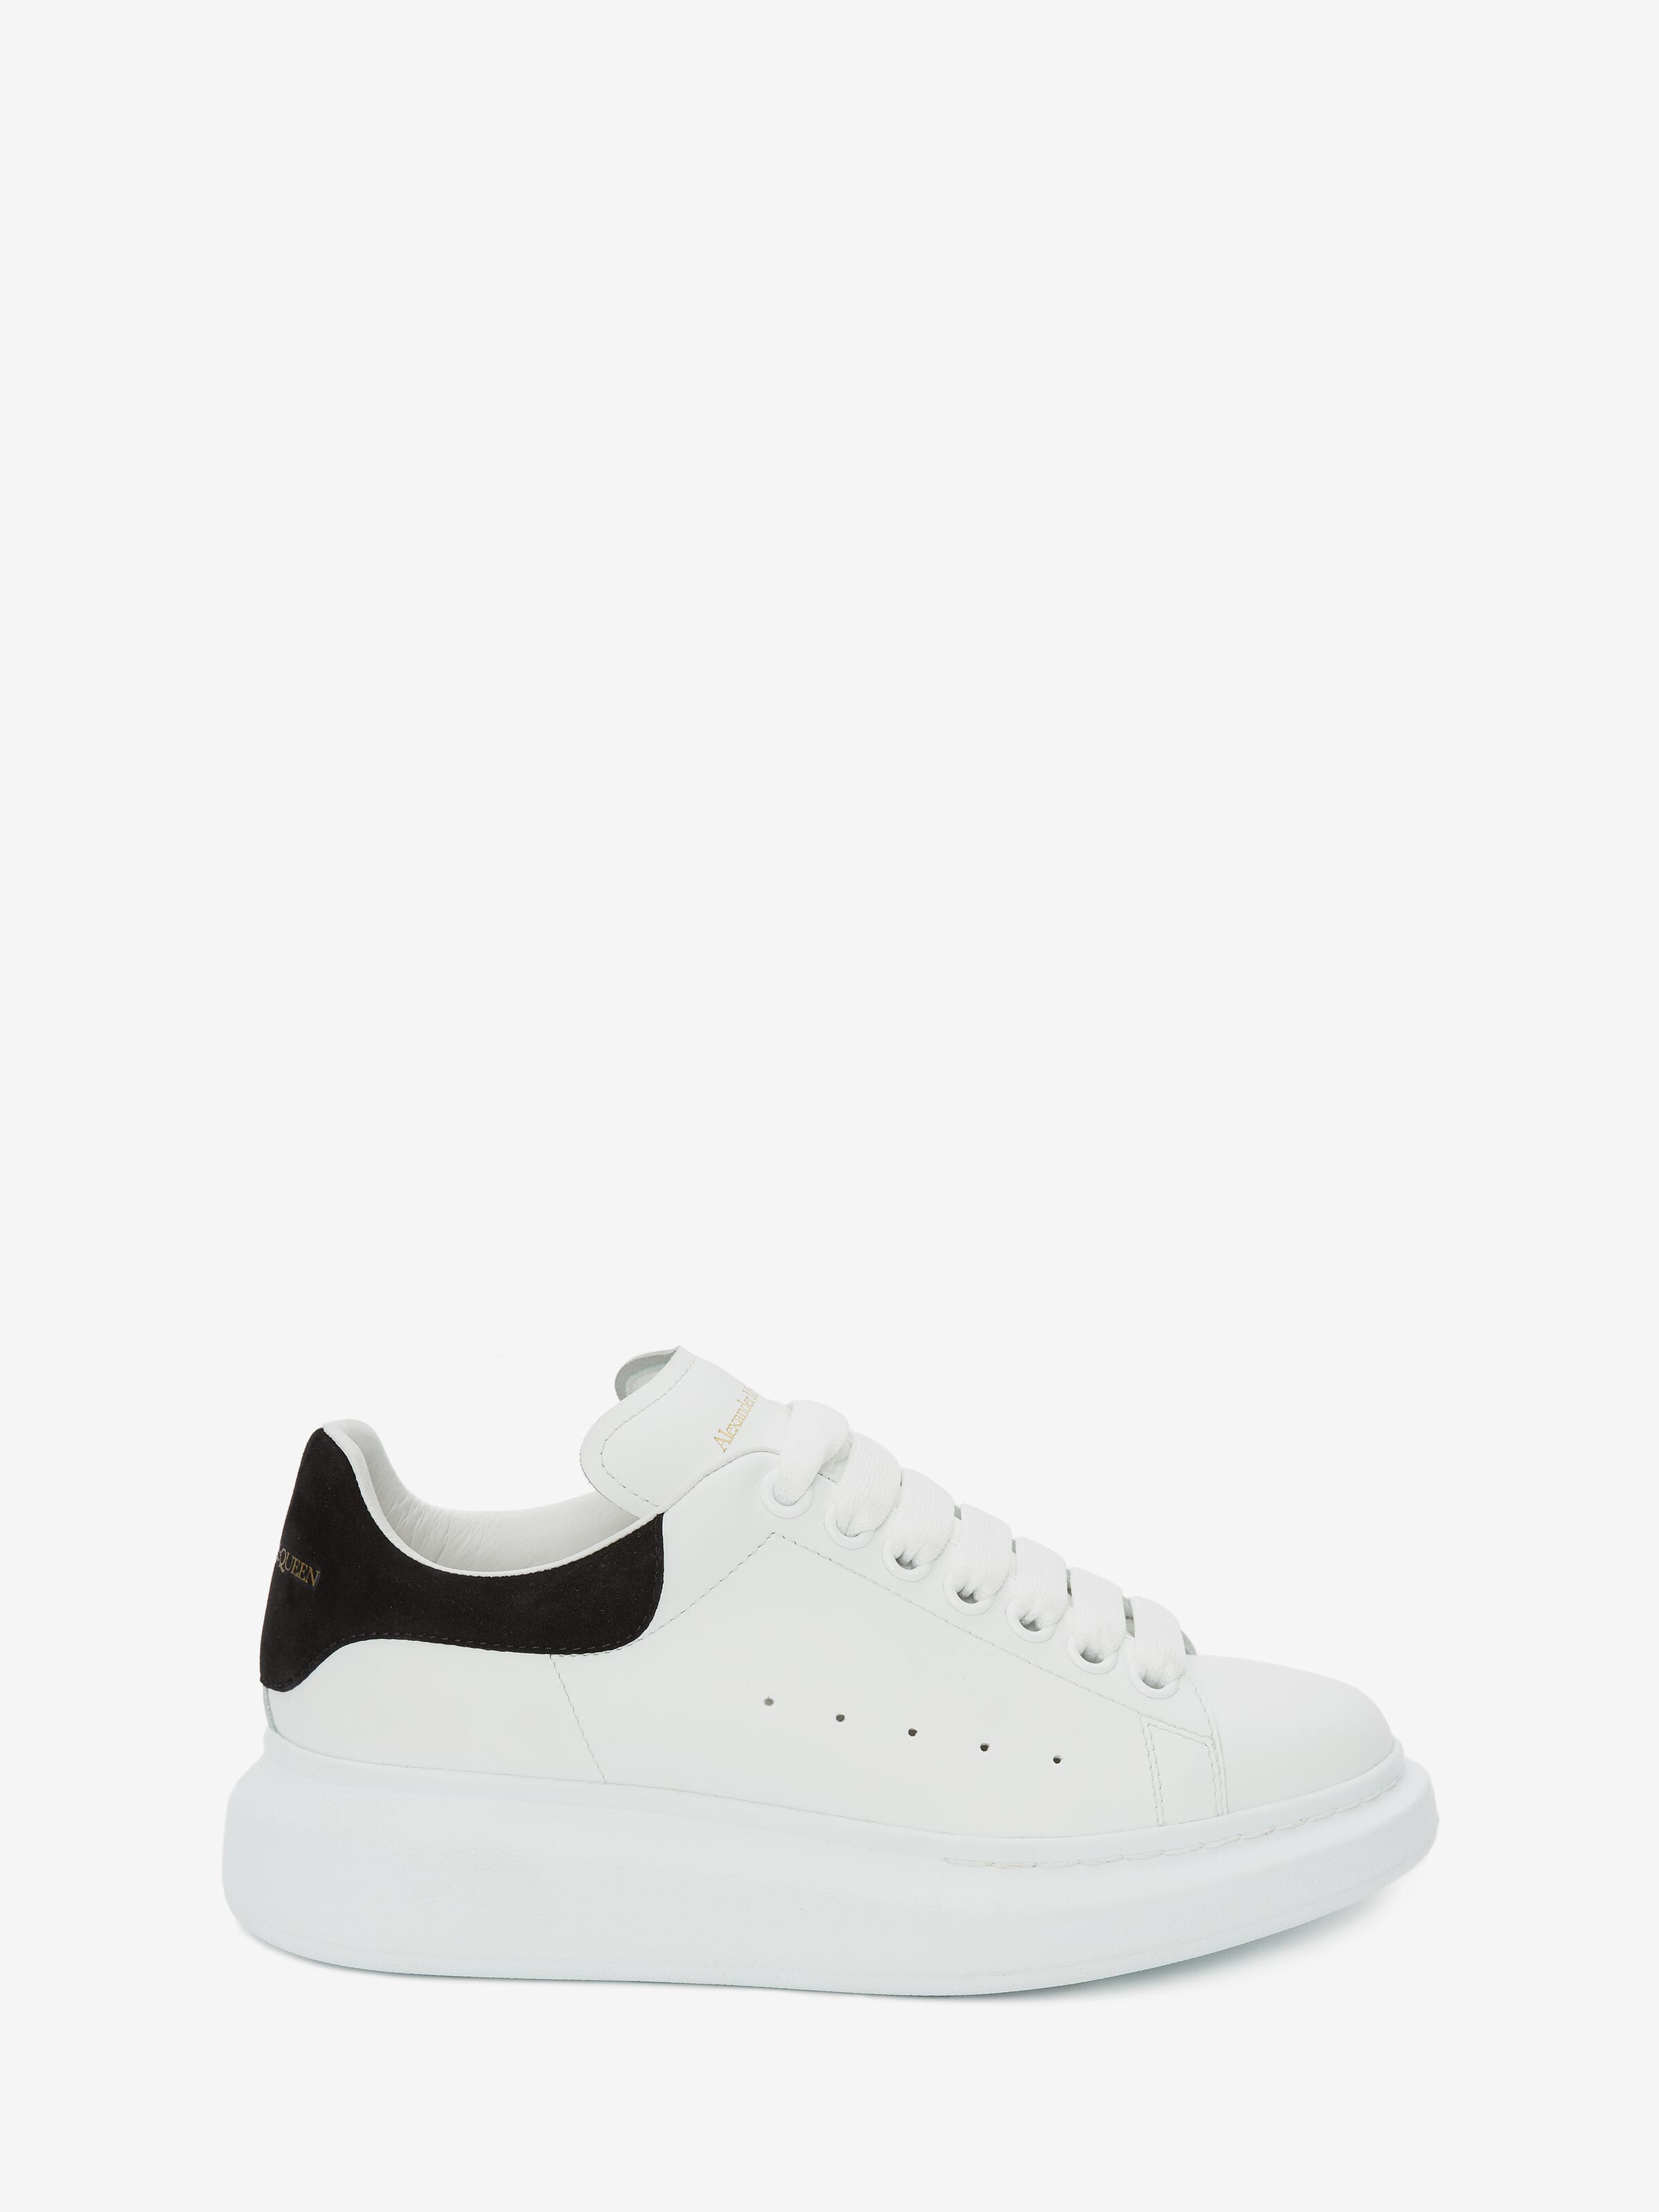 Oversized Sneaker in White/Black ...